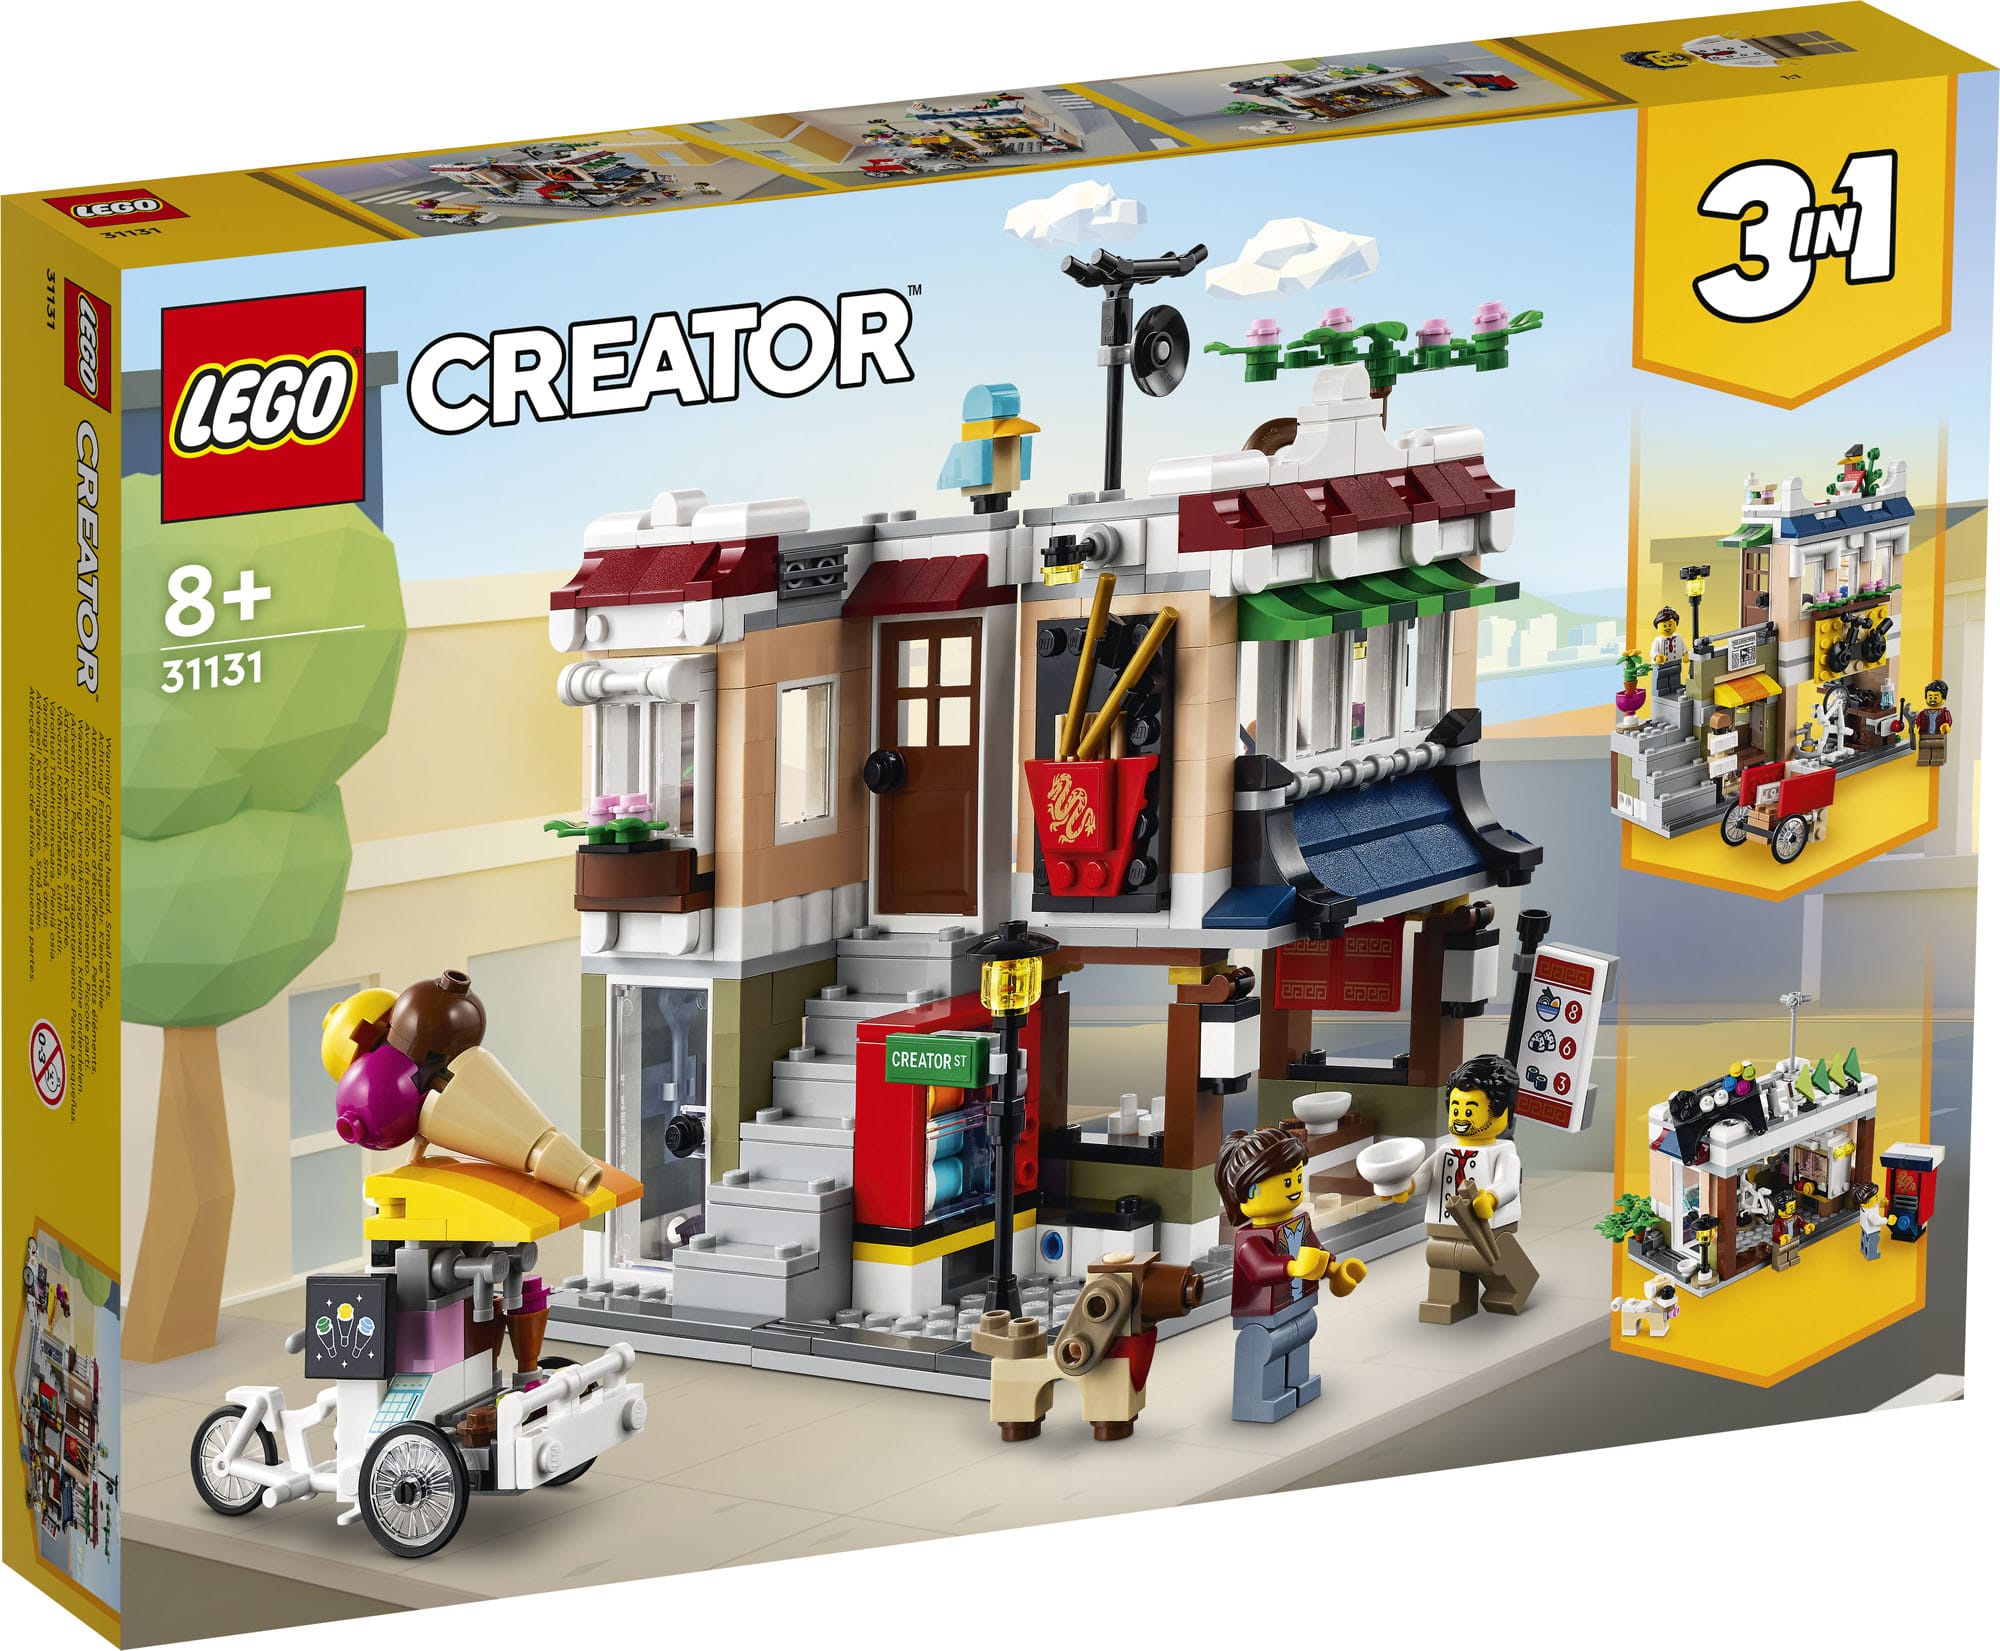 LEGO Creator 3 In 1 31131 (2)